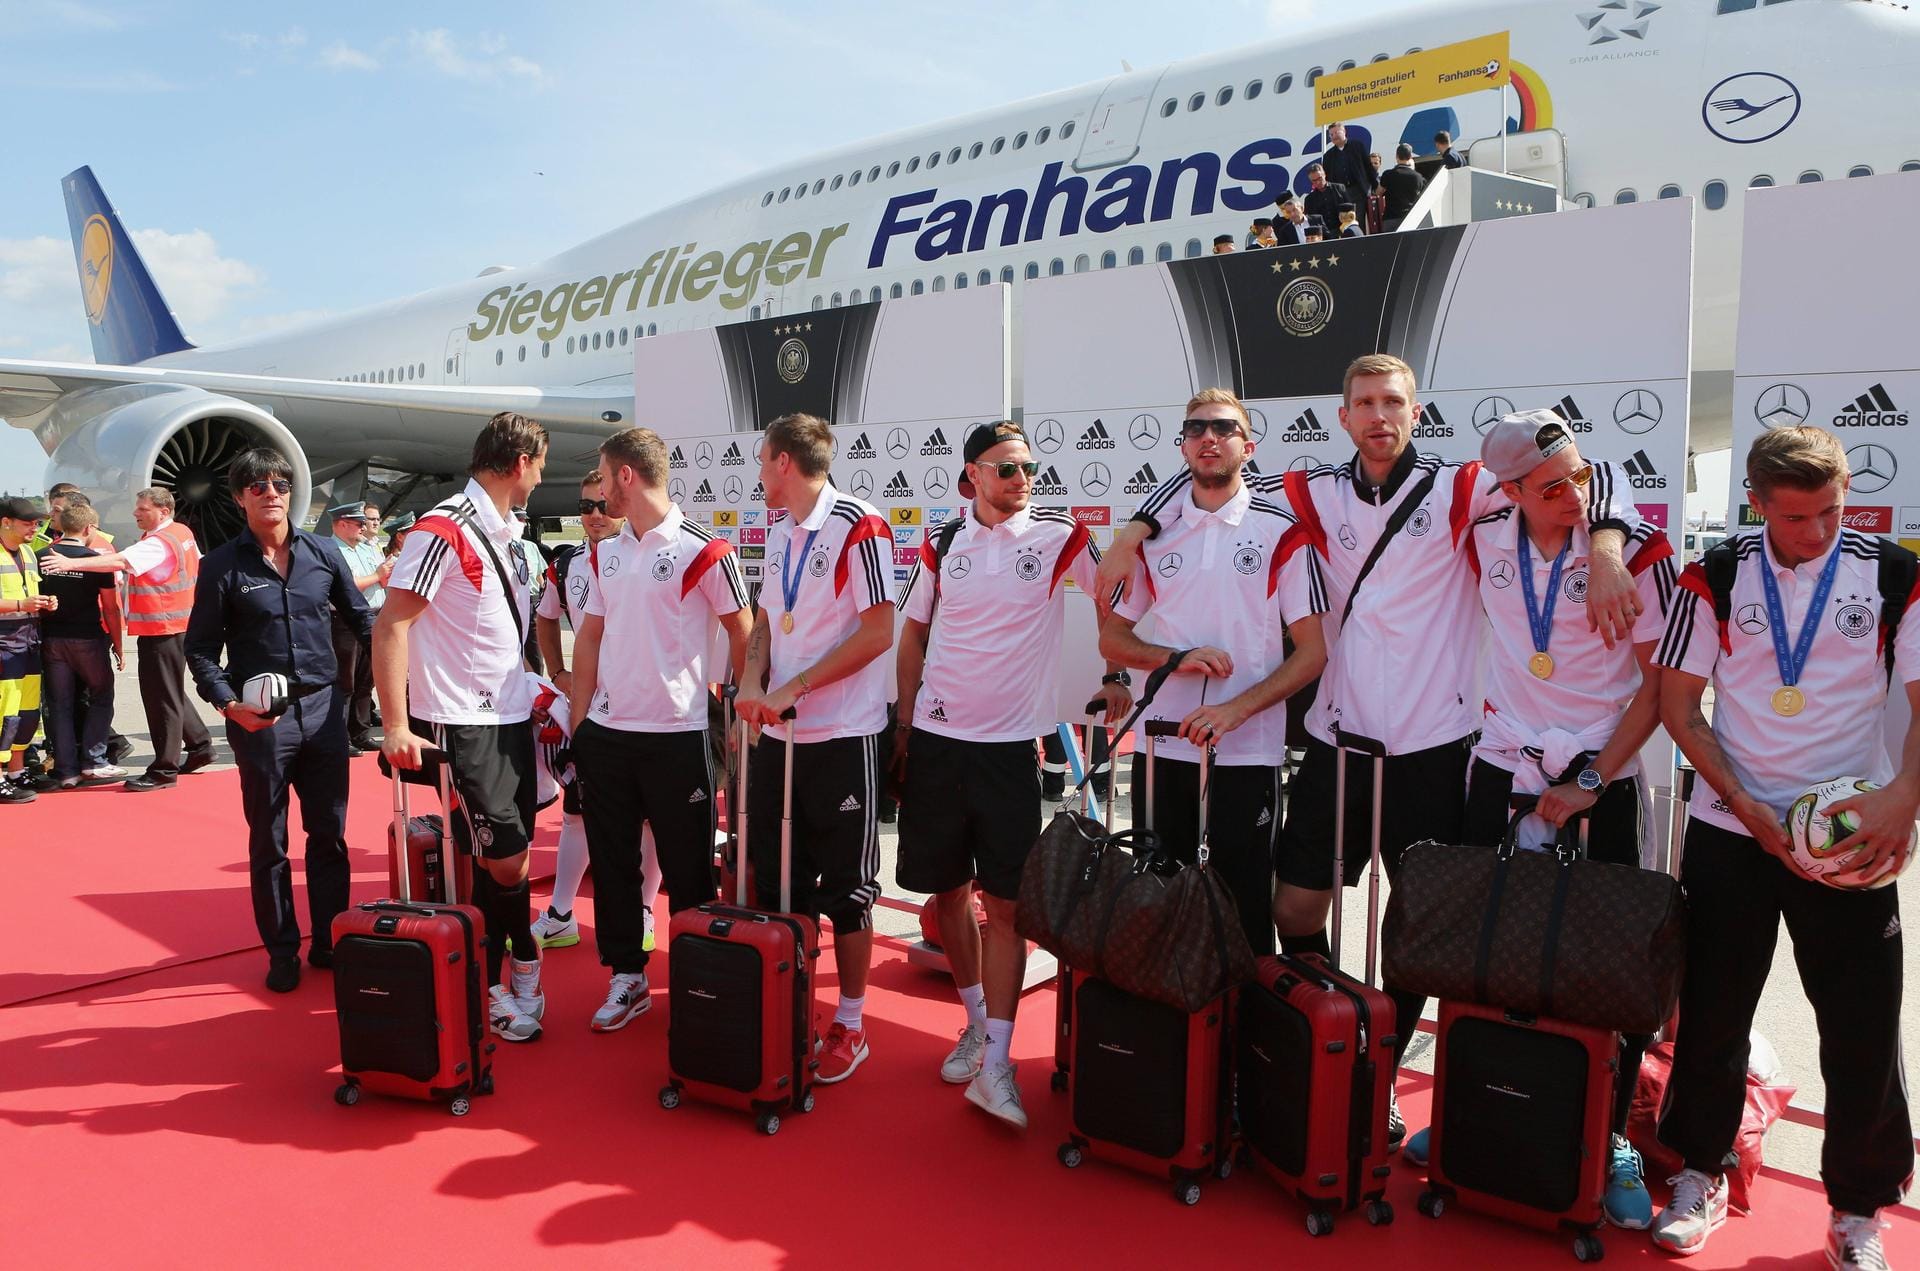 Der Siegerflieger am Flughafen Tegel: In Berlin wurde die Deutsche Fußball-Nationalmannschaft nach dem WM-Sieg 2014 empfangen.